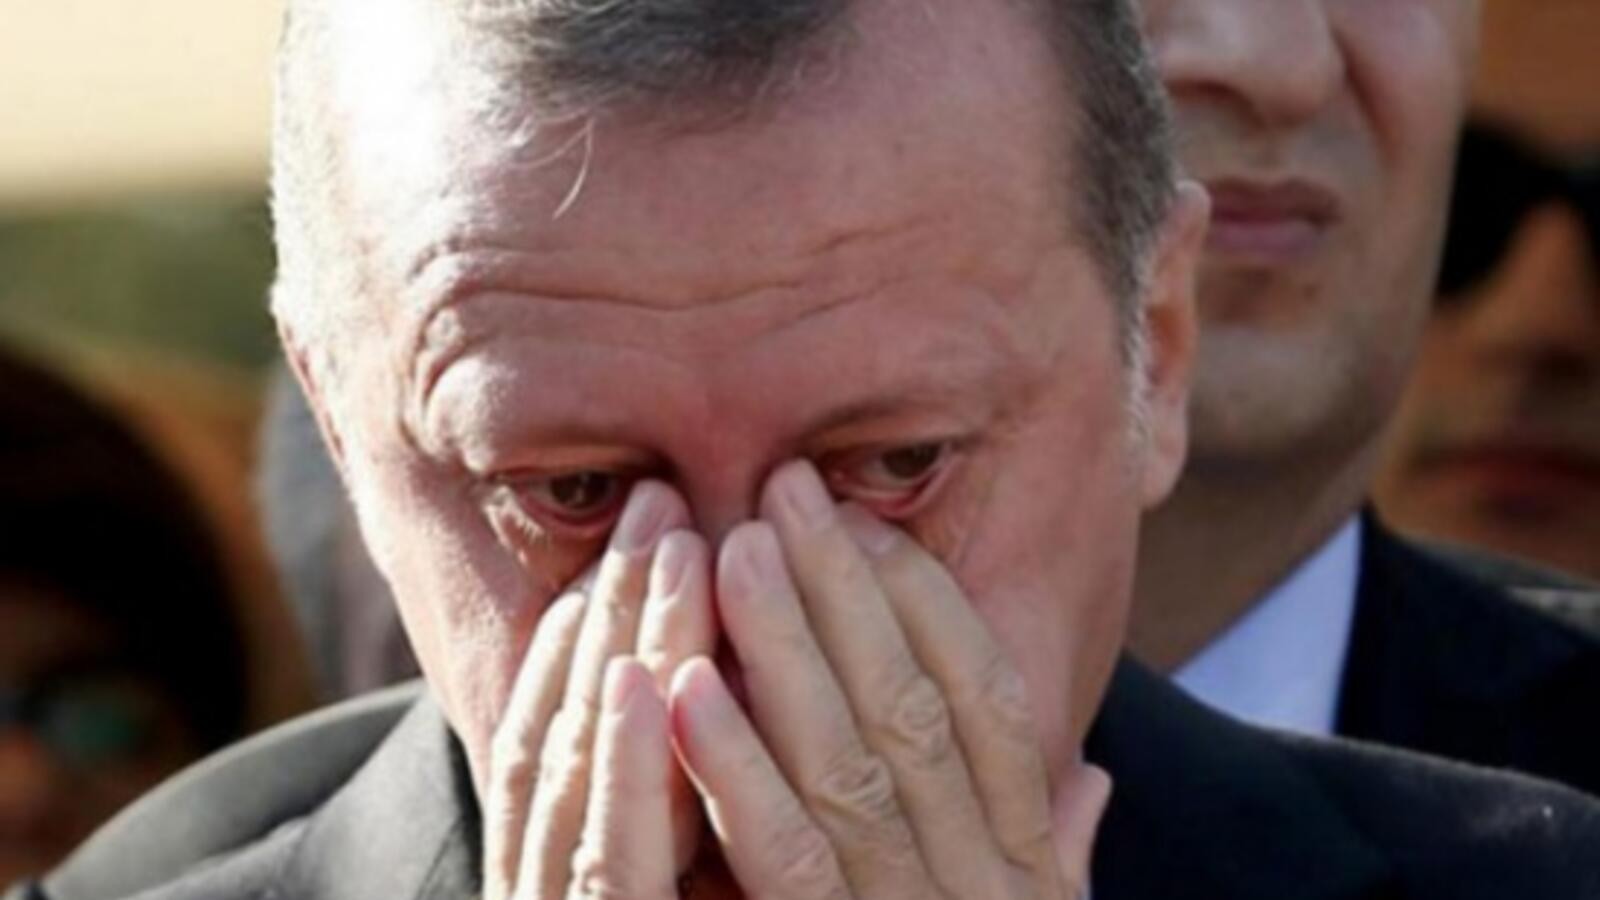 أردوغان يصارع سكرات الموت, بارت تجارته بالدين وانفضح أمره, فيديو نادر